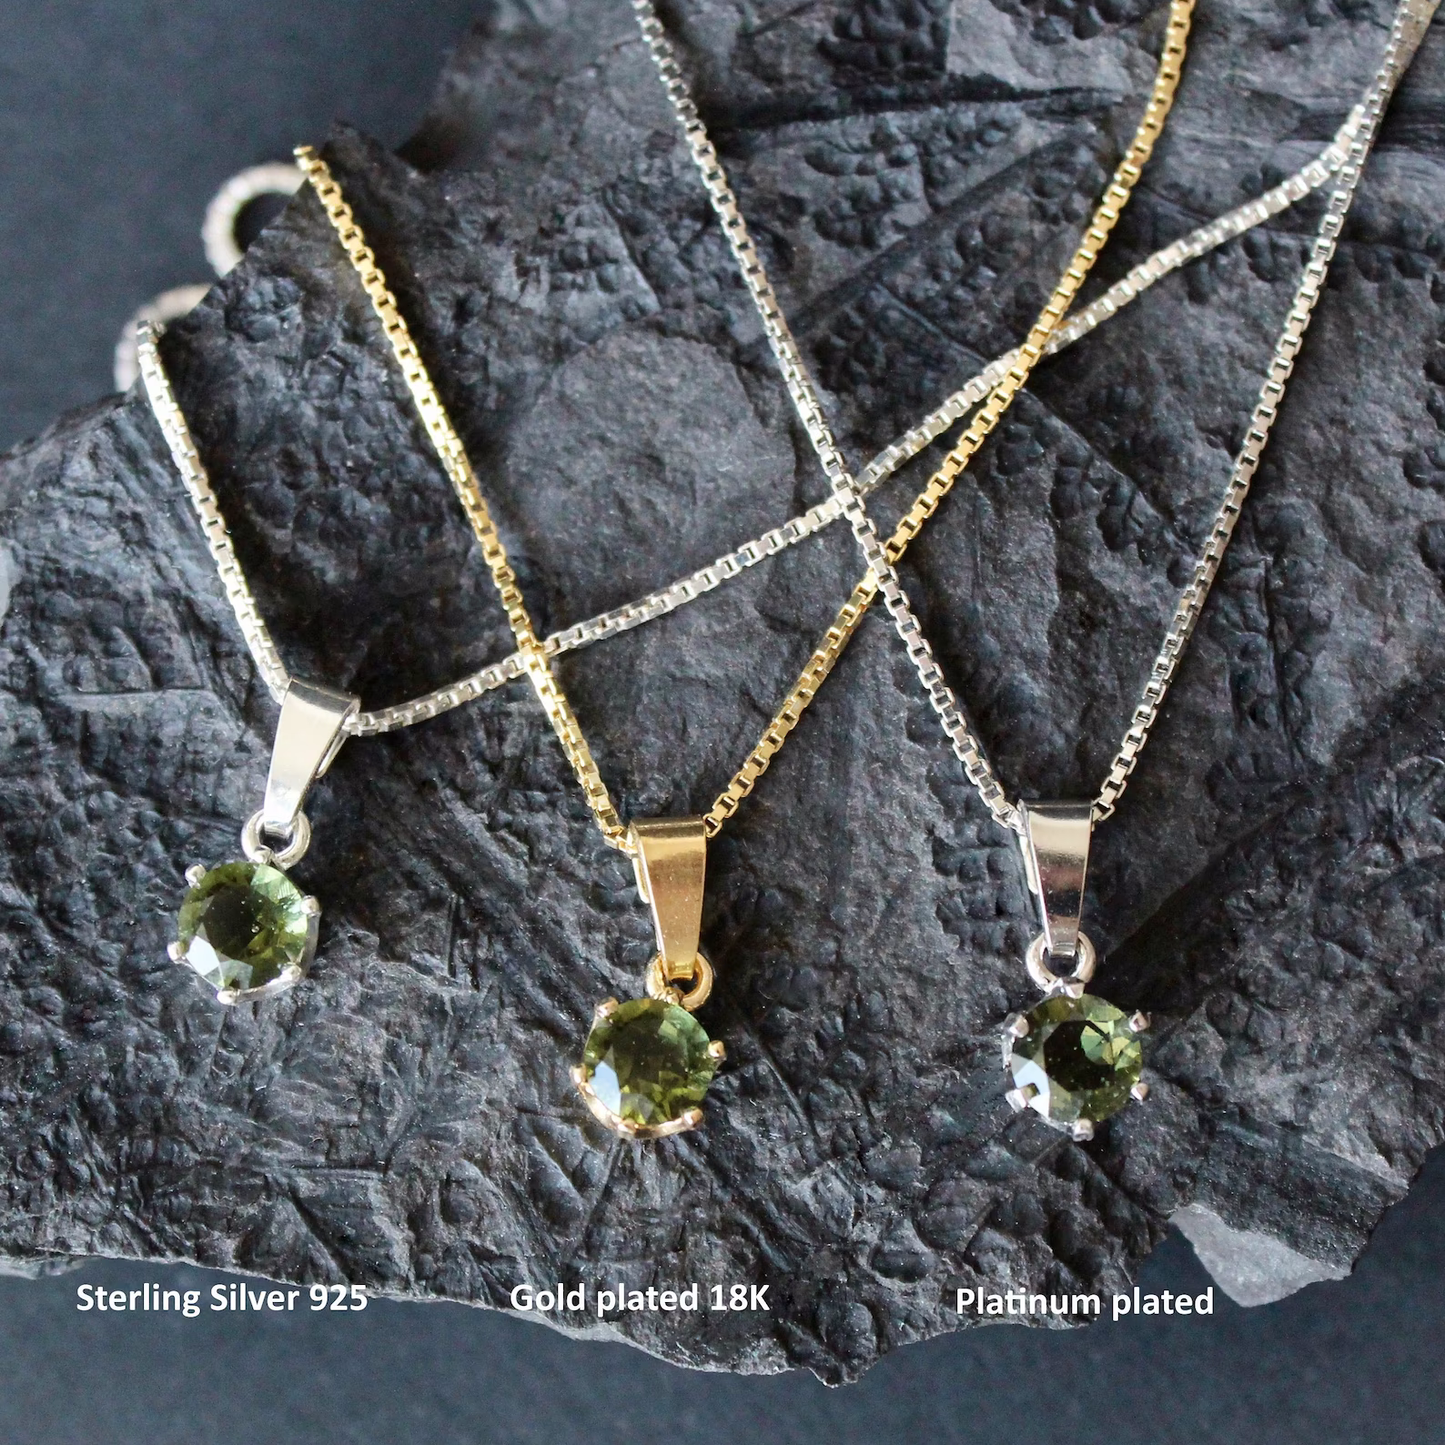 6mm stone real MOLDAVITE Pendant Sterling Silver Moldavite jewelry- CZECH moldavite necklace Genuine moldavite necklaces Authentic moldavite